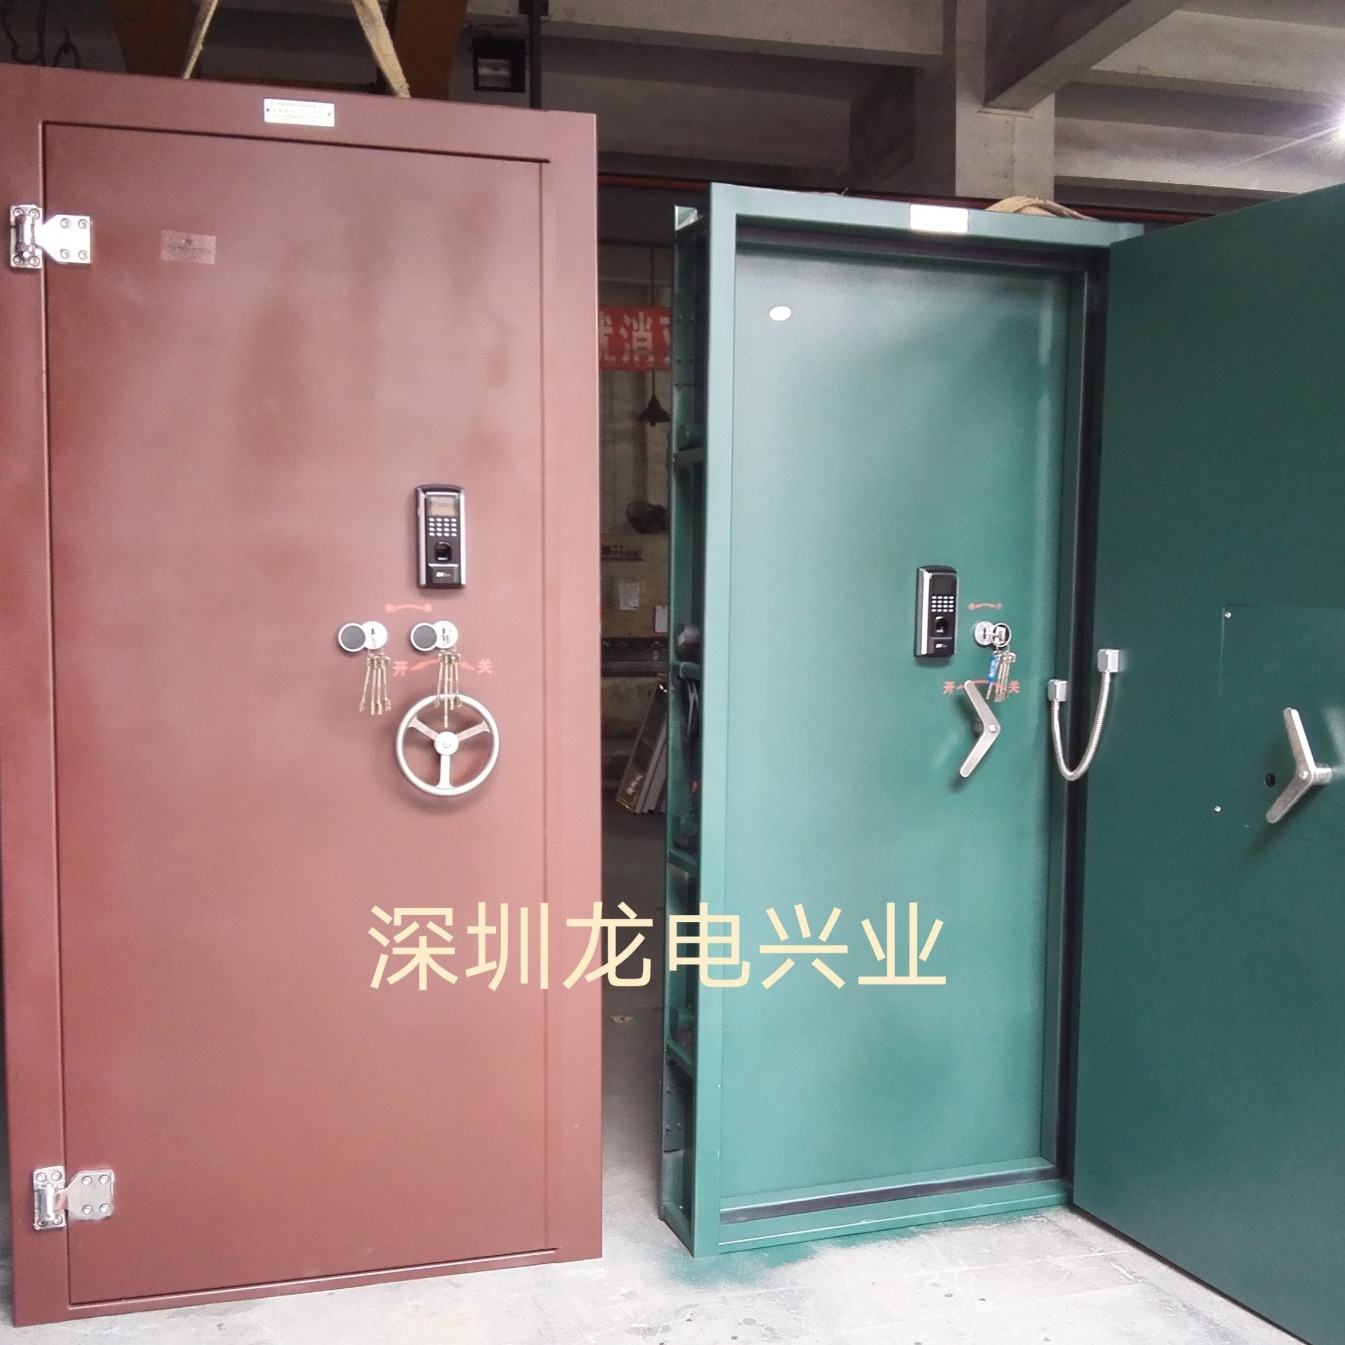 广东珠海保密门厂家 保密室门价格 定制档案室保密门图片